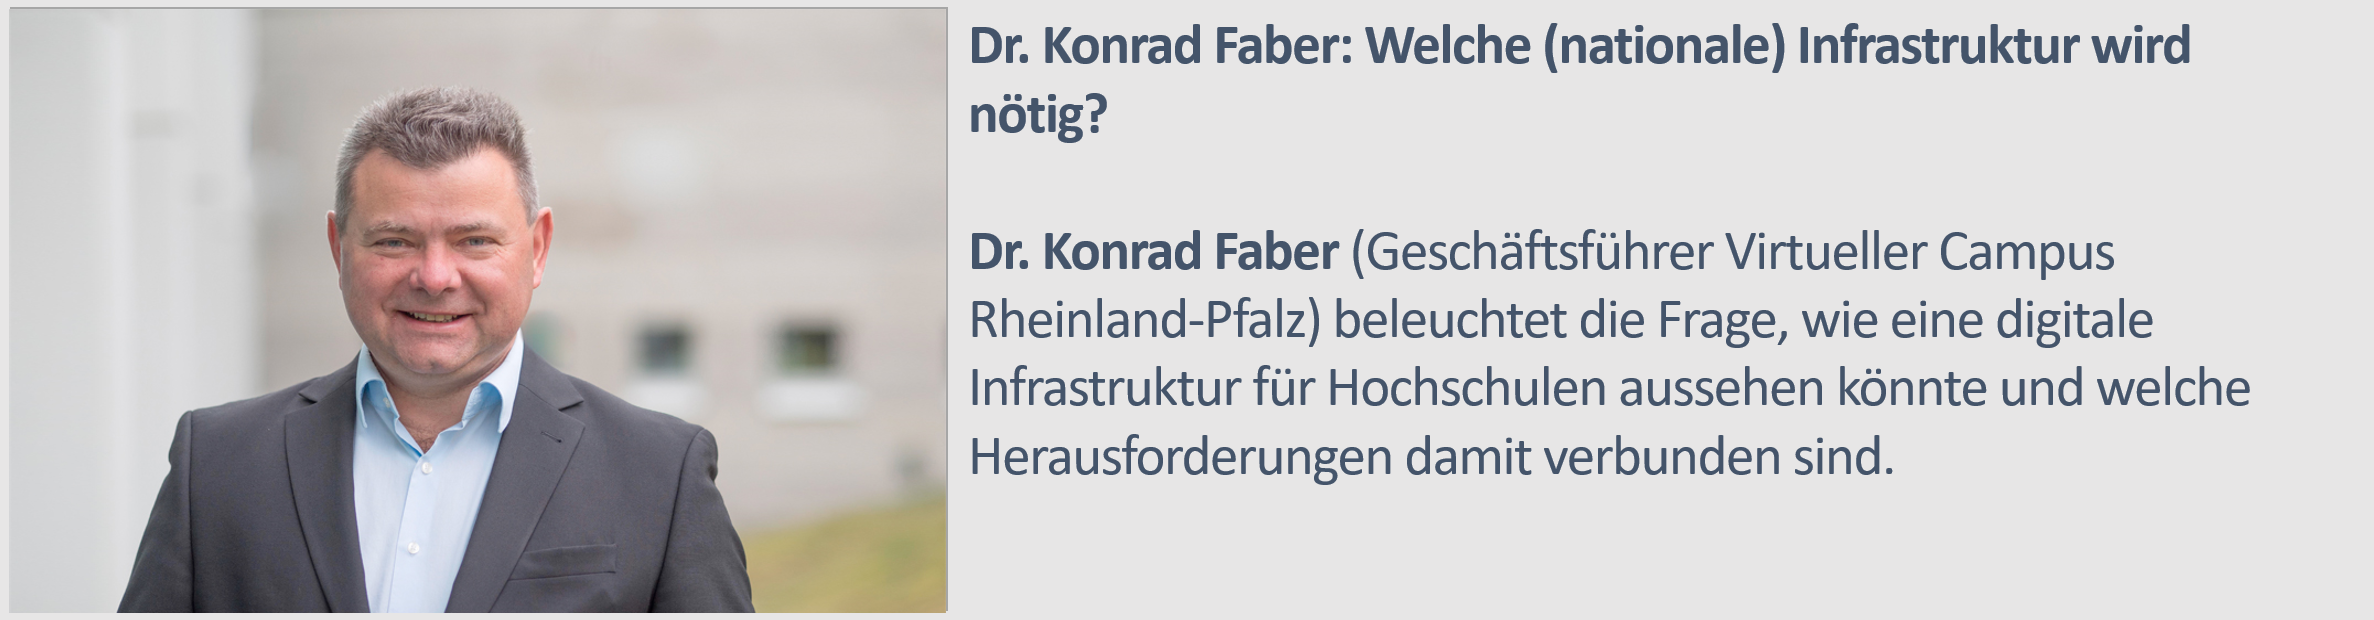 Konrad Faber